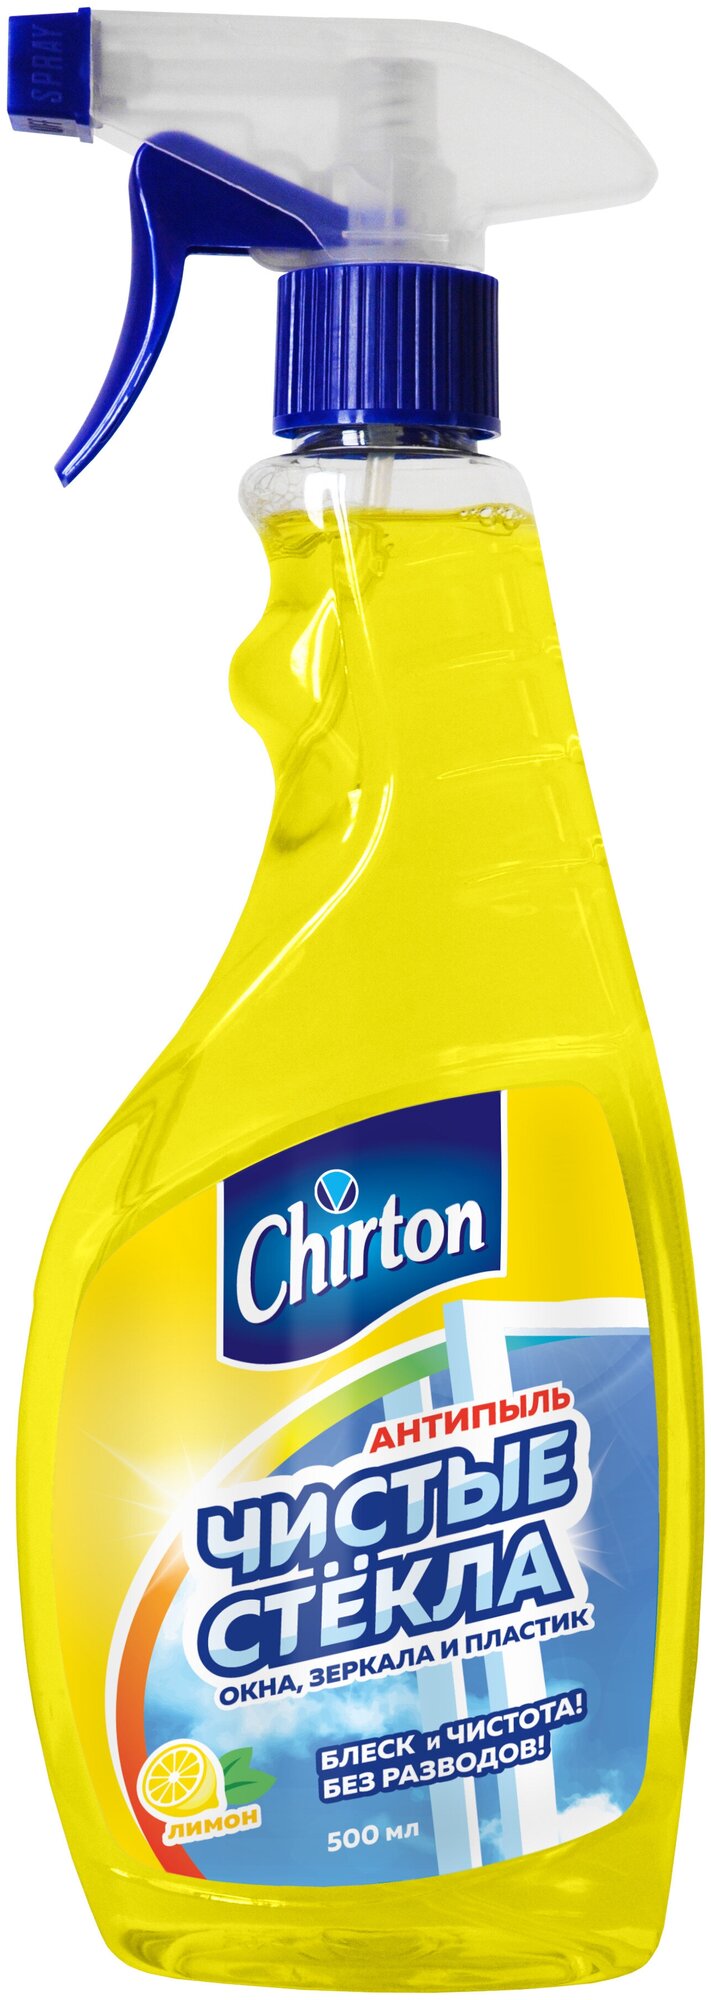 Средство для мытья стекол, зеркал и окон Chirton "Лимон" без разводов и пятен, 500 мл